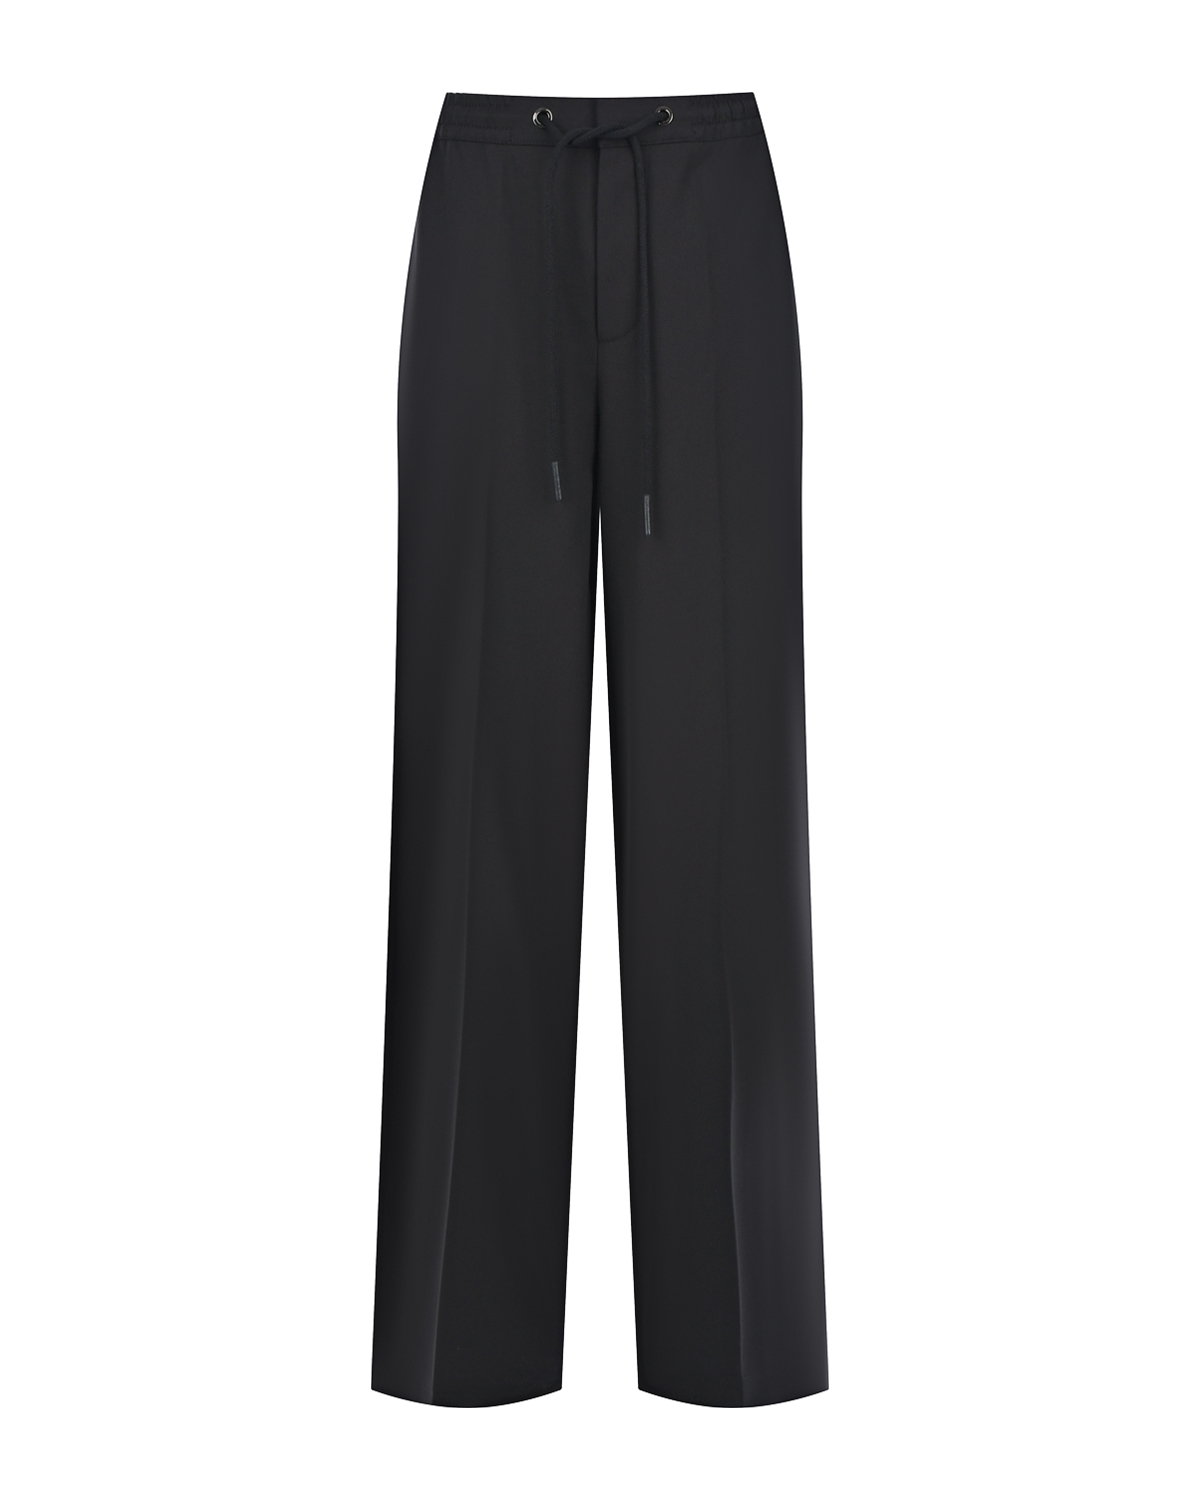 Черные брюки с поясом на кулиске ADDICTED_TO, размер 40, цвет черный - фото 1